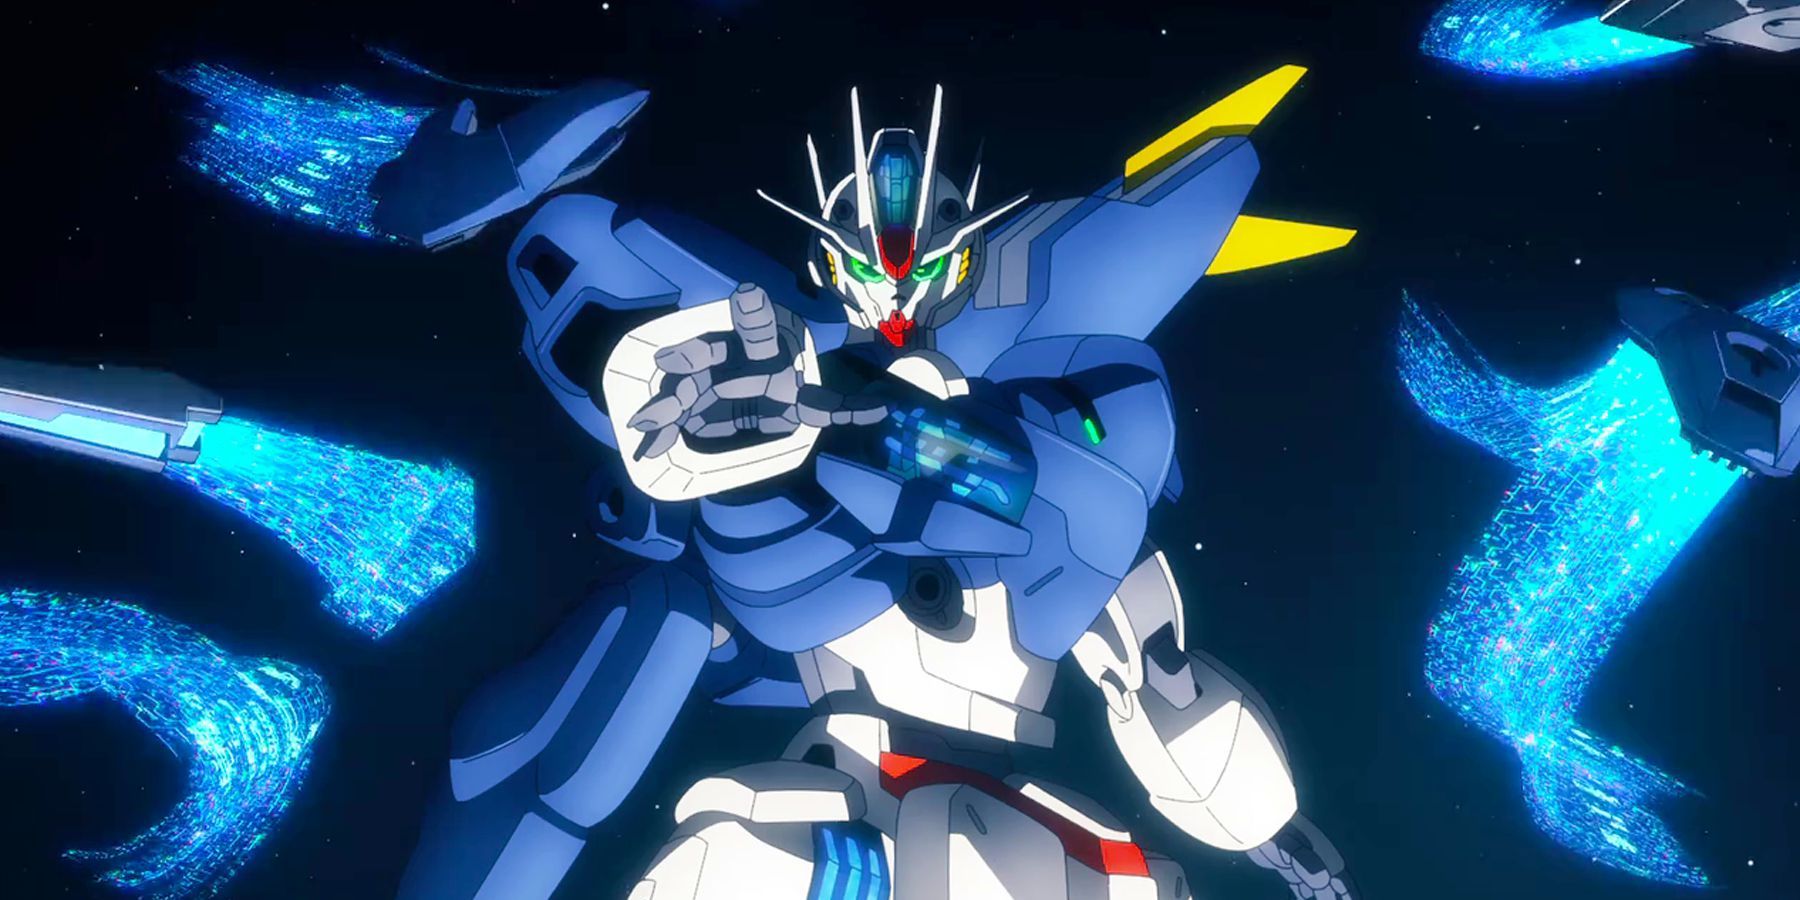 02-Gundam Mercury Aerial Attacks GUND Bits